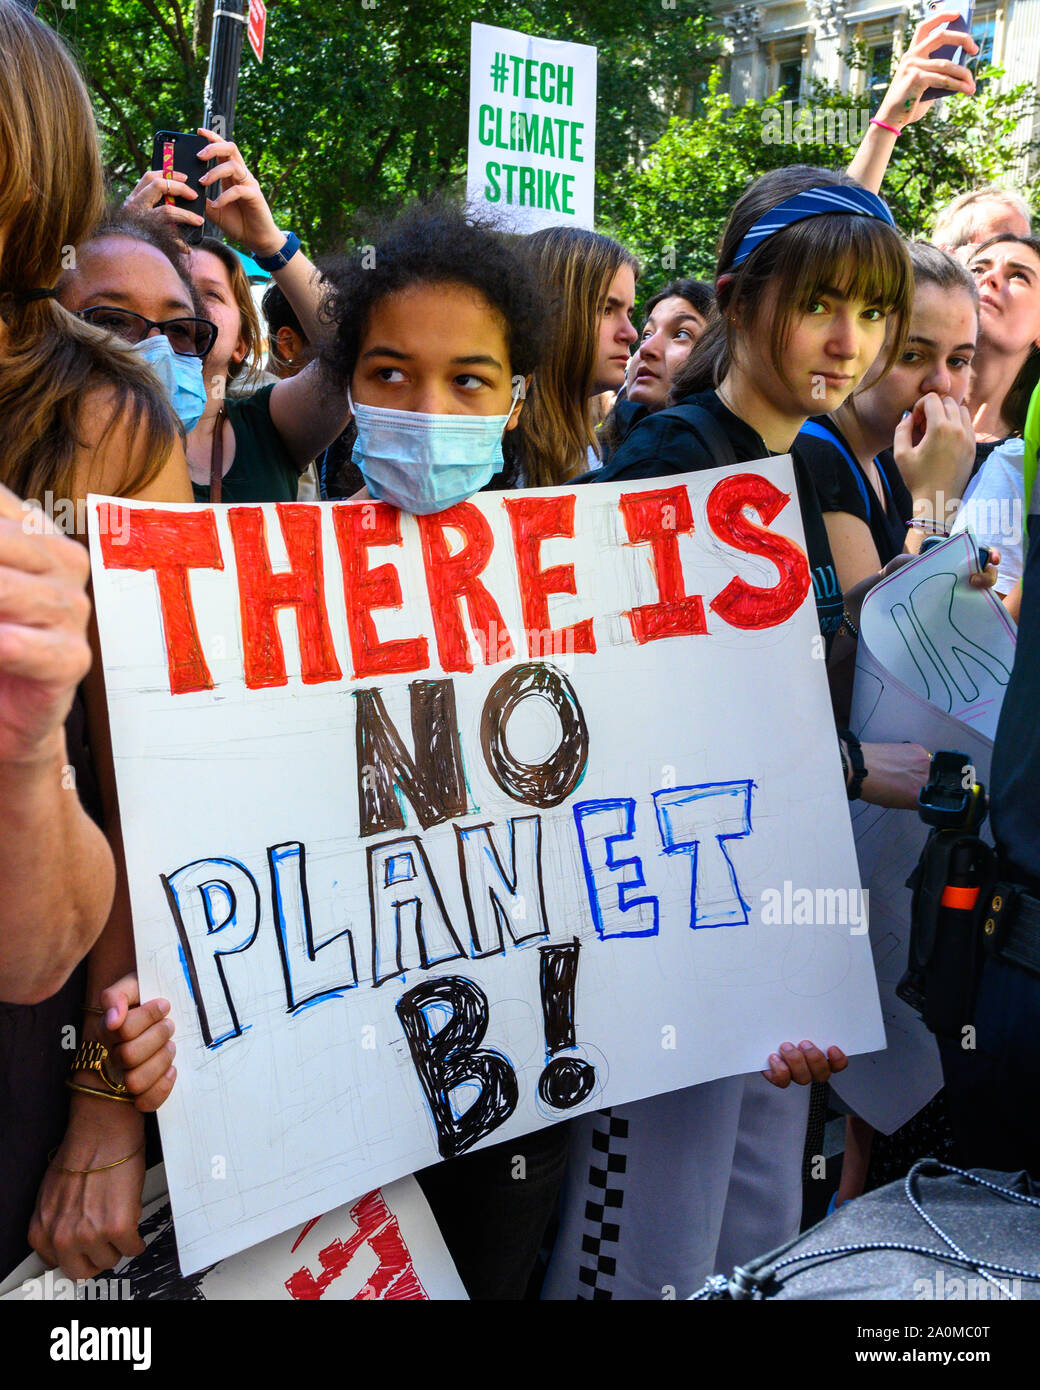 Nueva York, Estados Unidos, 20 de septiembre de 2019. La gente marcha a través de la ciudad de Nueva York durante una huelga del clima de rally, como decenas de miles de personas se unieron a la protesta mundial para exigir medidas inmediatas para combatir el cambio climático. Crédito: Enrique Shore/Alamy Live News Foto de stock